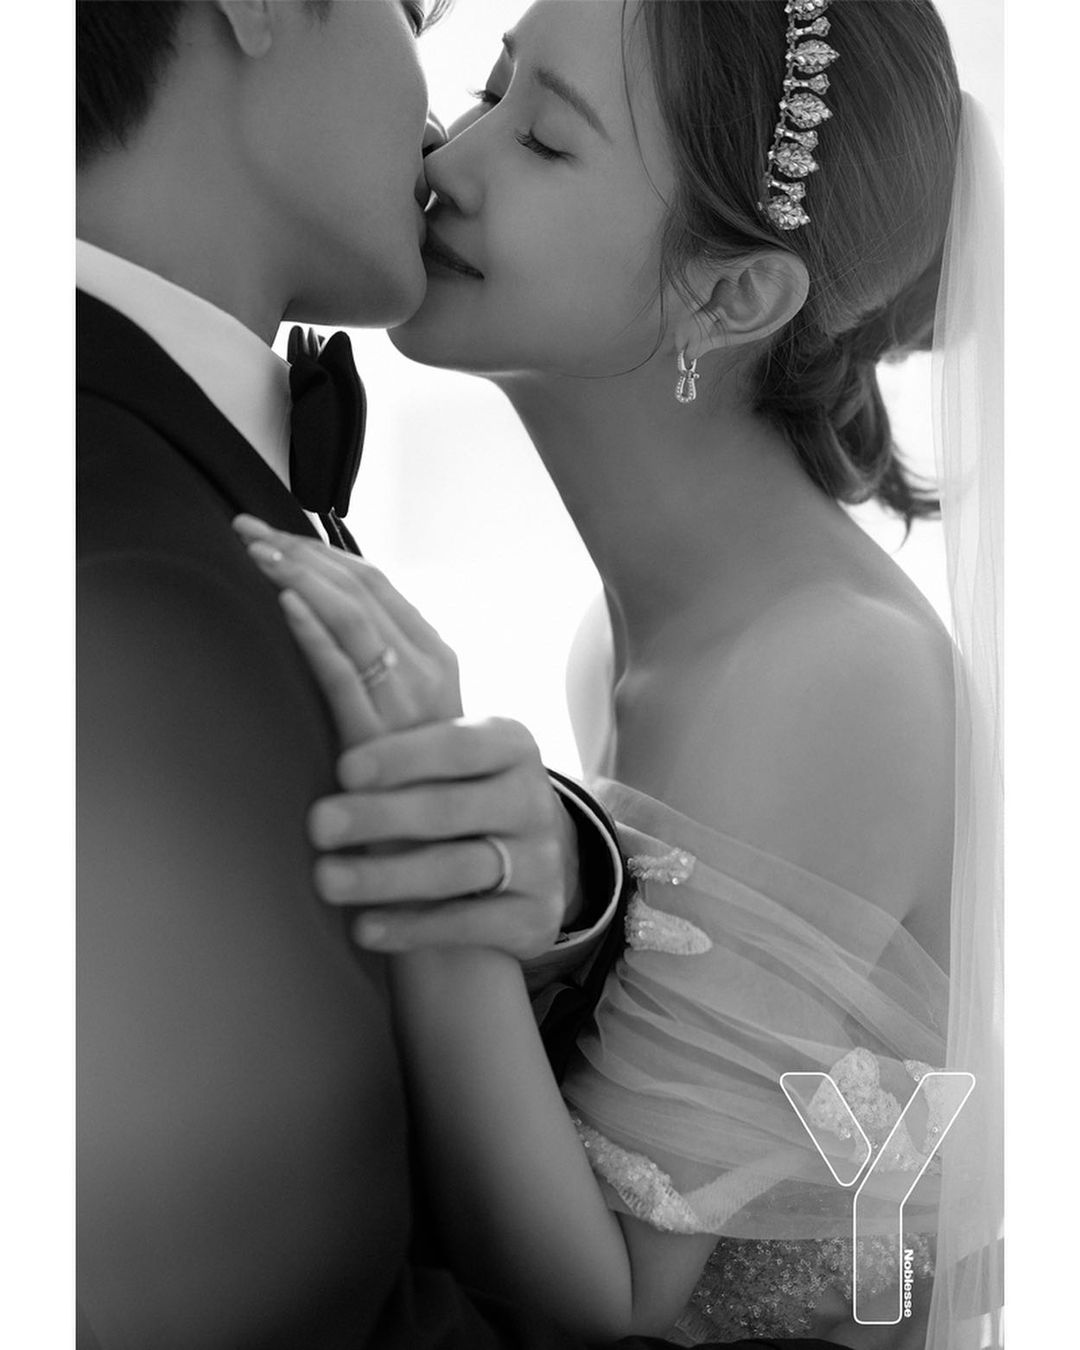 Lee Da Hae - Se7en chính thức xả ảnh cưới: Hình hôn nhau chiếm spotlight, chú rể tương lai có còn “mặt nặng như chì”? - Ảnh 4.